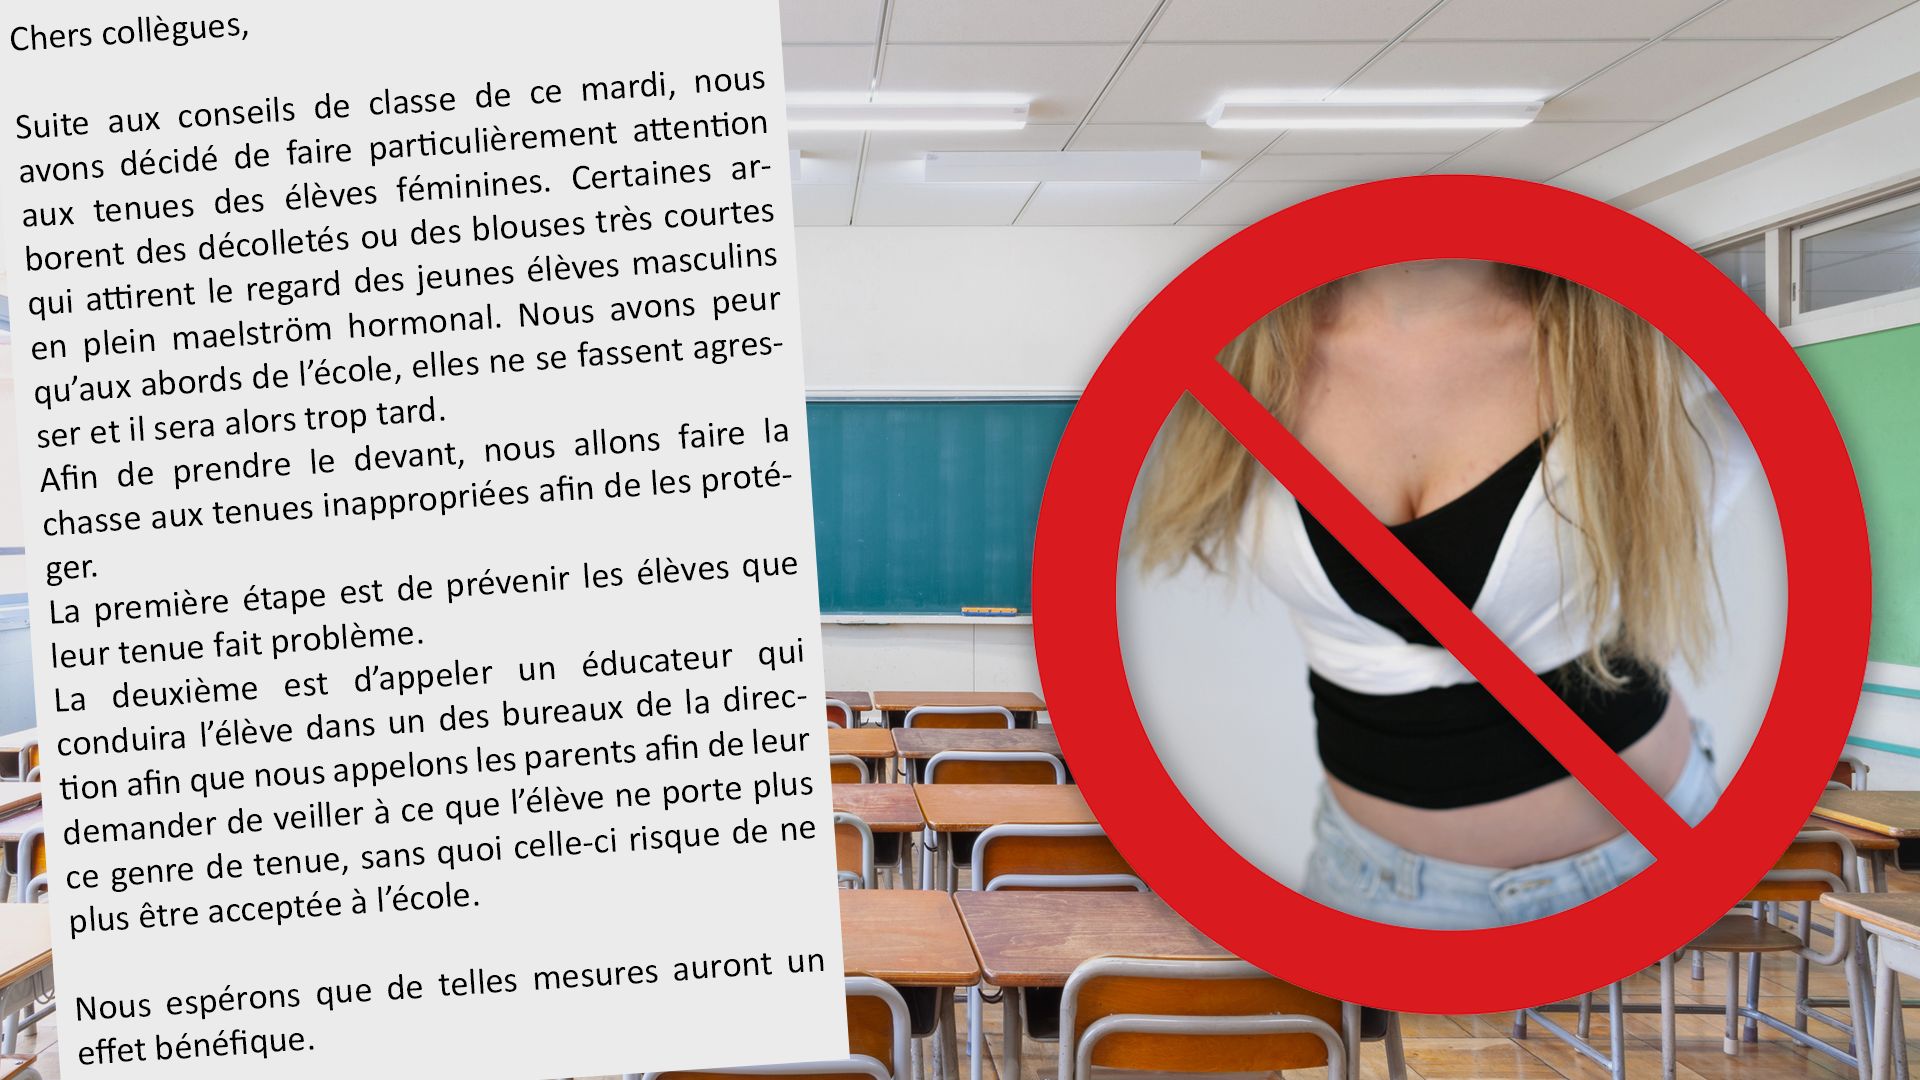 Une école interdit les décolletés et les blouses courtes : qu’en pensez-vous ?